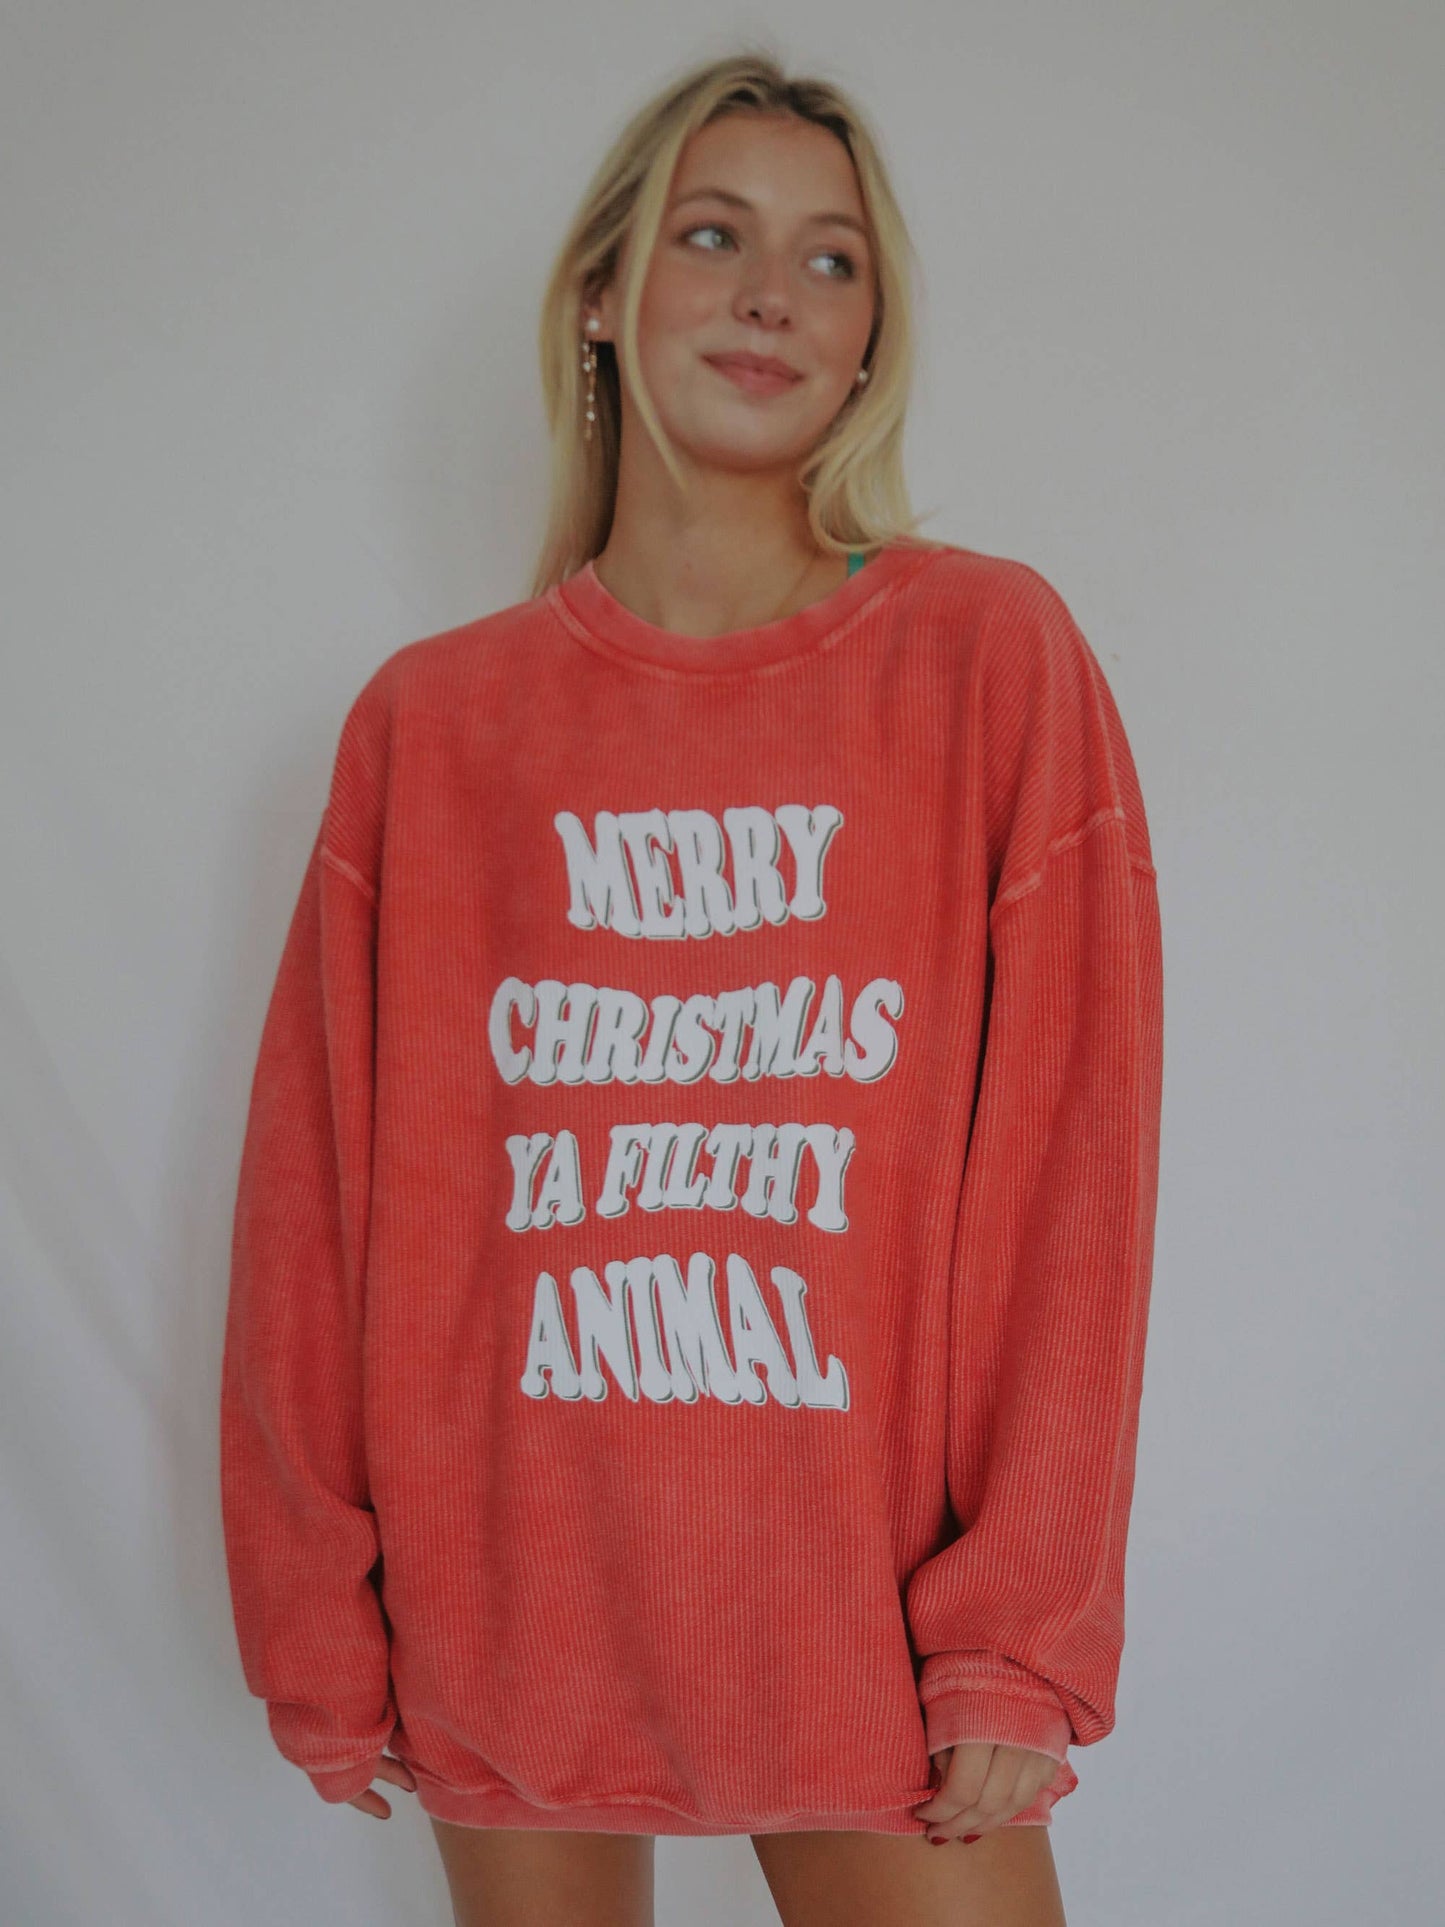 Merry Christmas Ya Filthy Animal Corded Sweatshirt